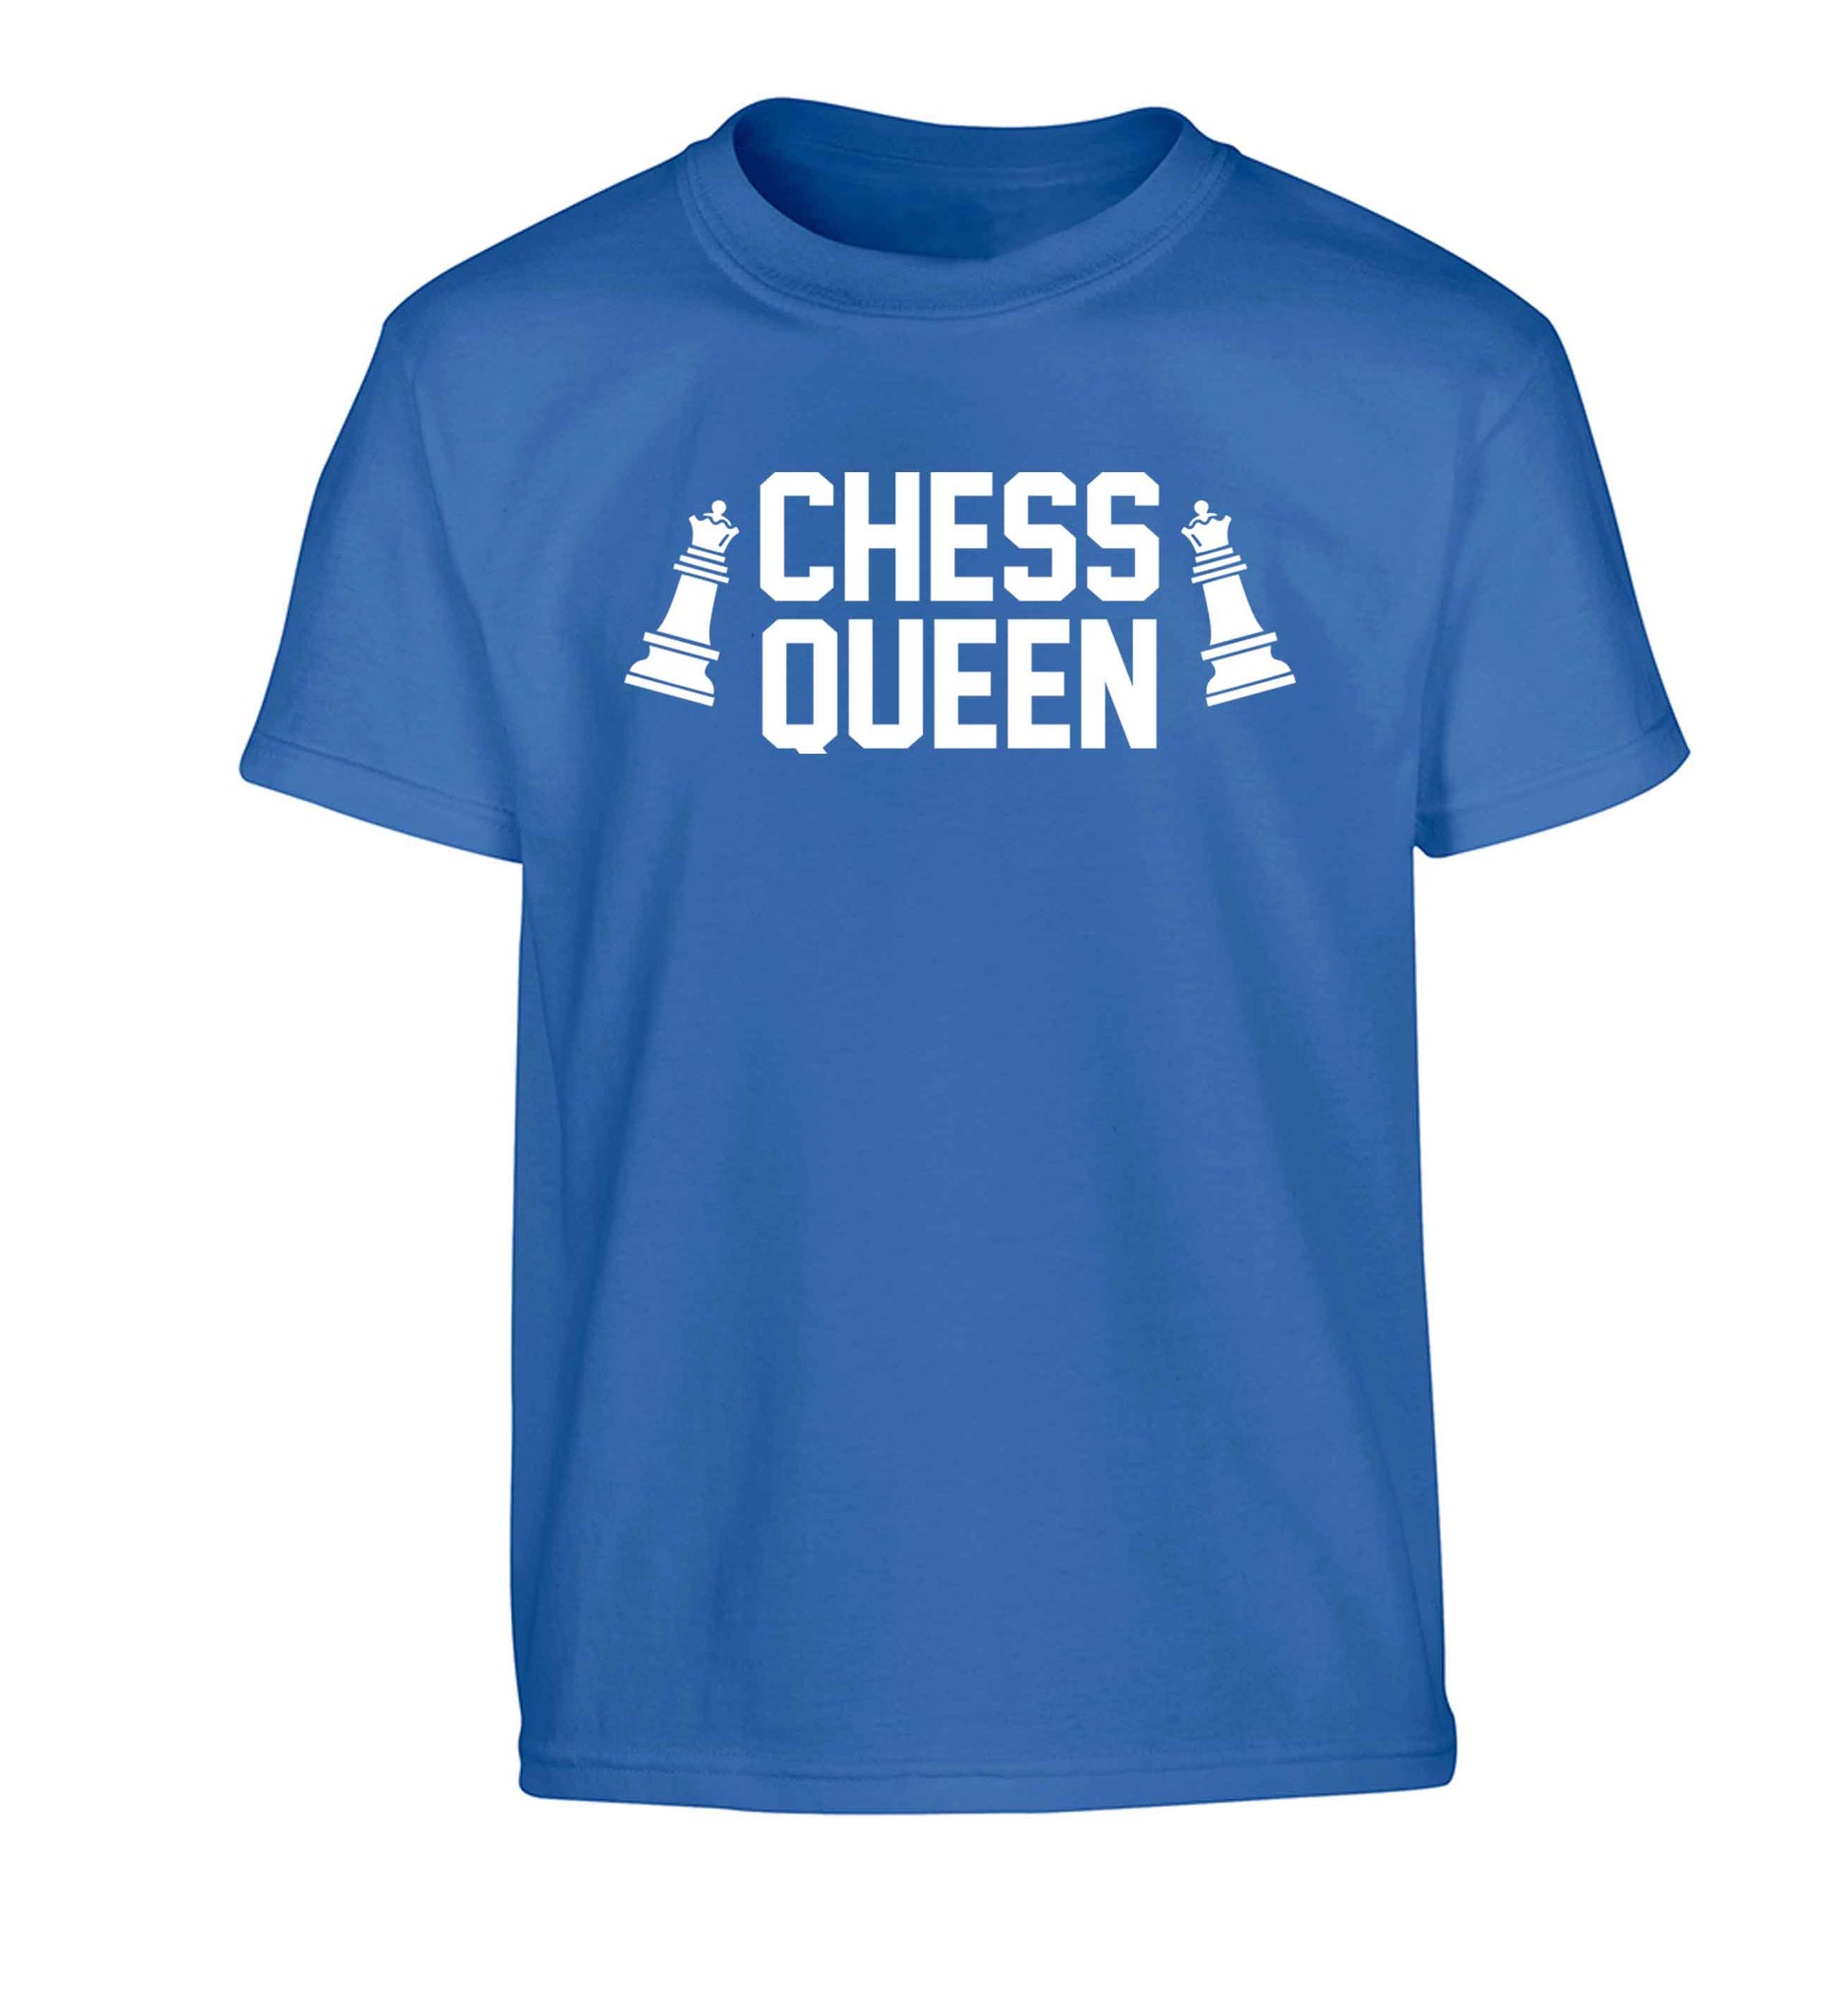 Chess queen Children's blue Tshirt 12-13 Years